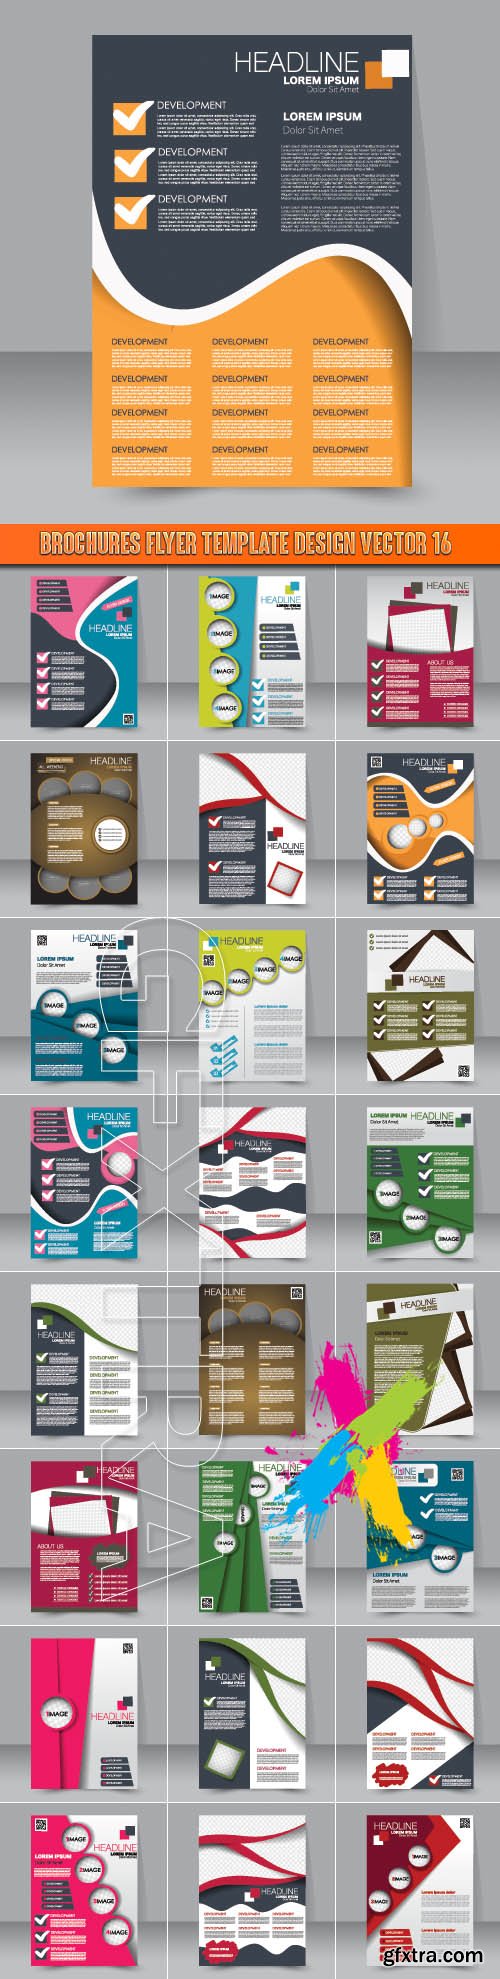 Brochures flyer template design vector 16